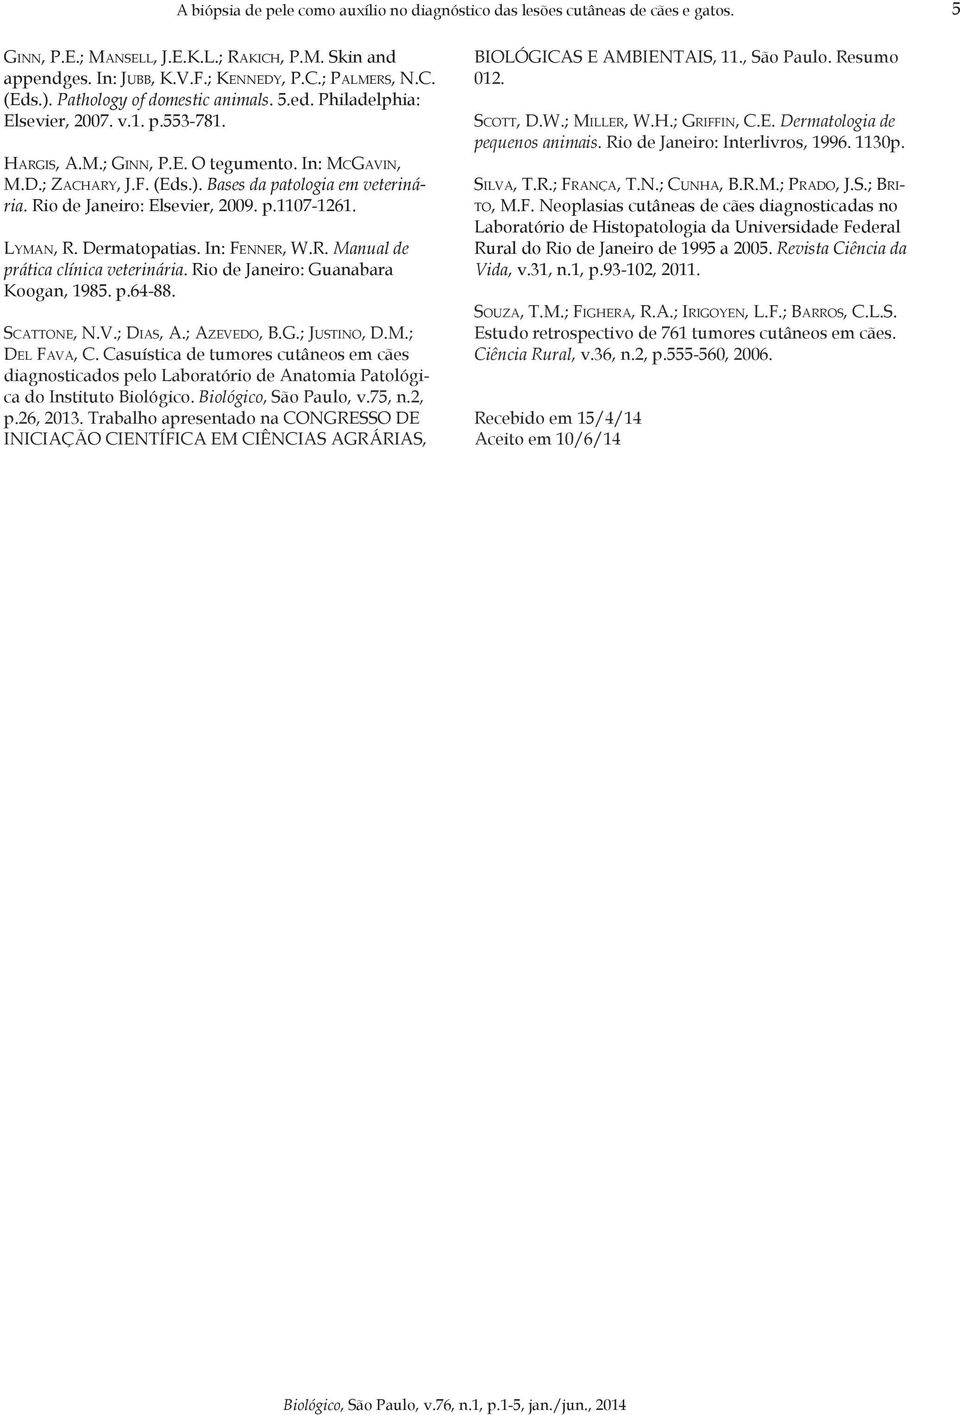 Rio de Janeiro: Elsevier, 2009. p.1107-1261. Lyman, R. Dermatopatias. In: Fenner, W.R. Manual de prática clínica veterinária. Rio de Janeiro: Guanabara Koogan, 1985. p.64-88. Scattone, N.V.; Dias, A.